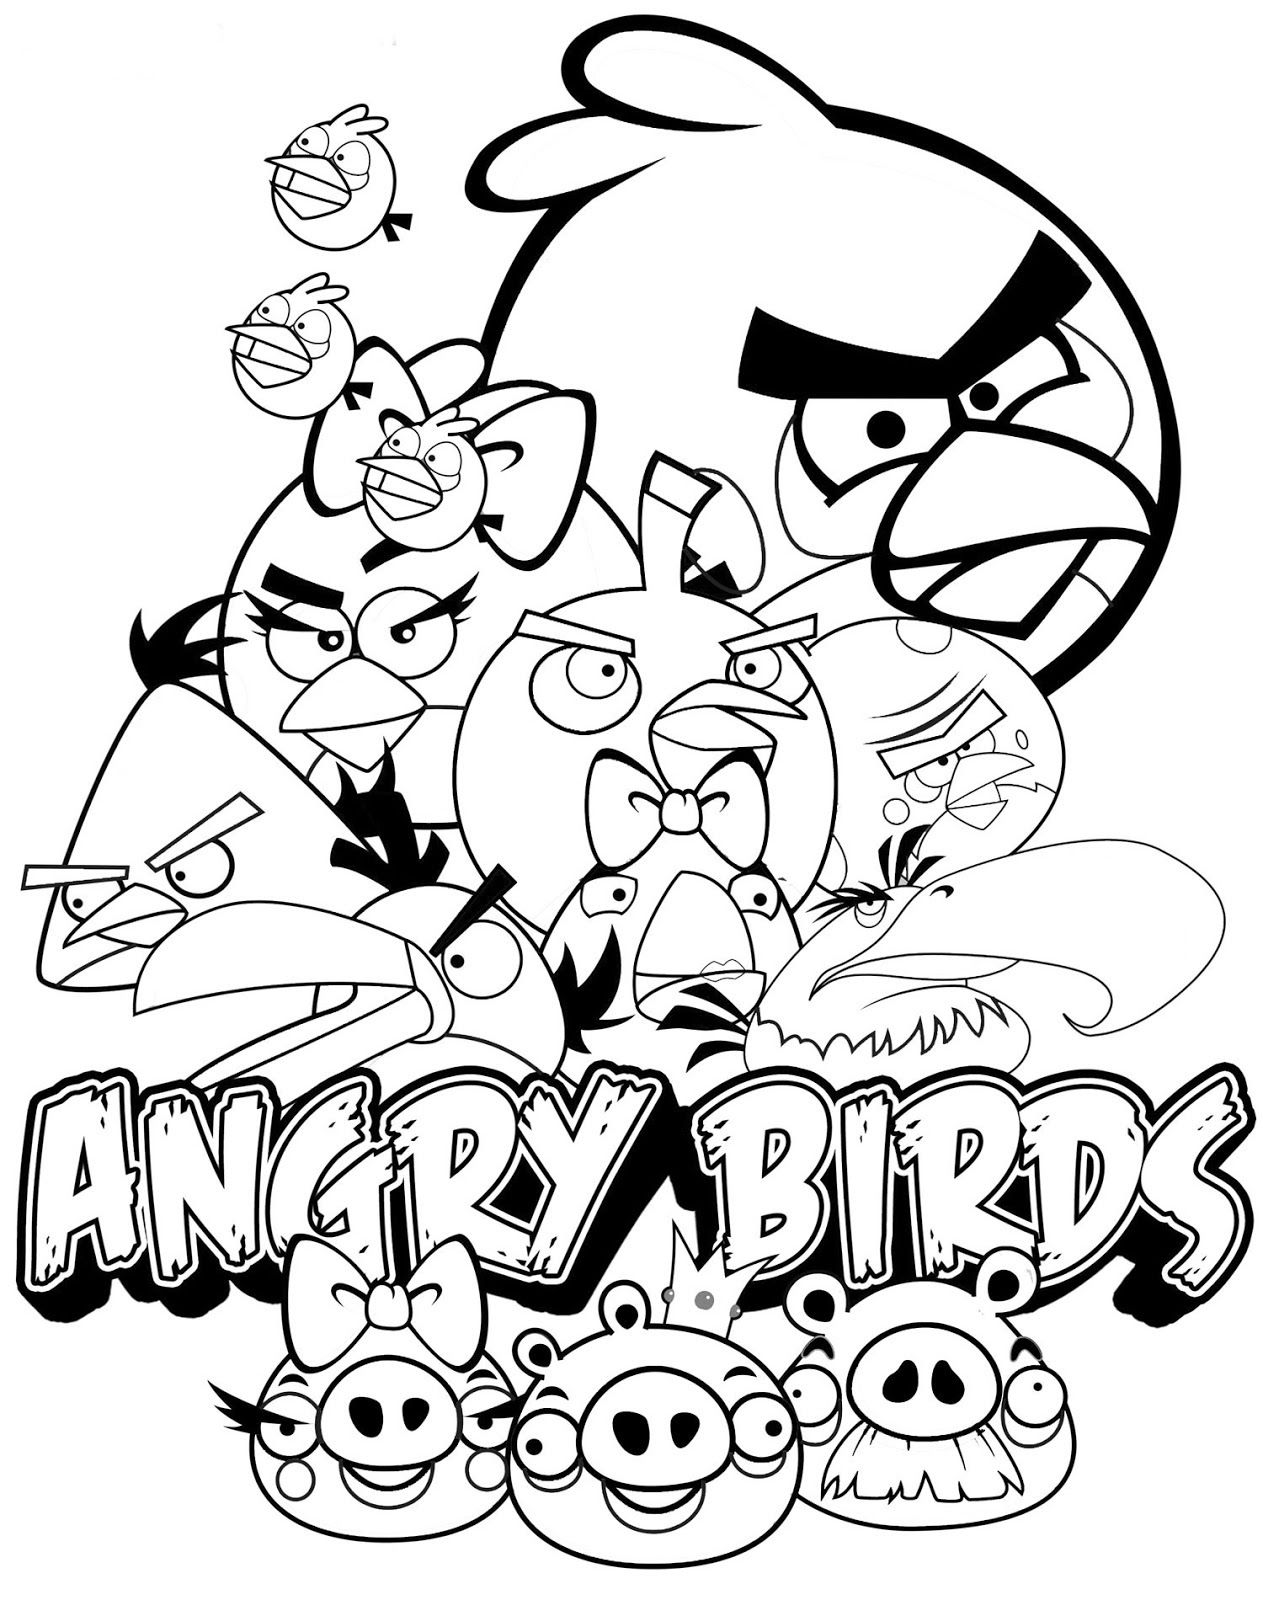 Tranh tô màu những chú chim Angry Birds